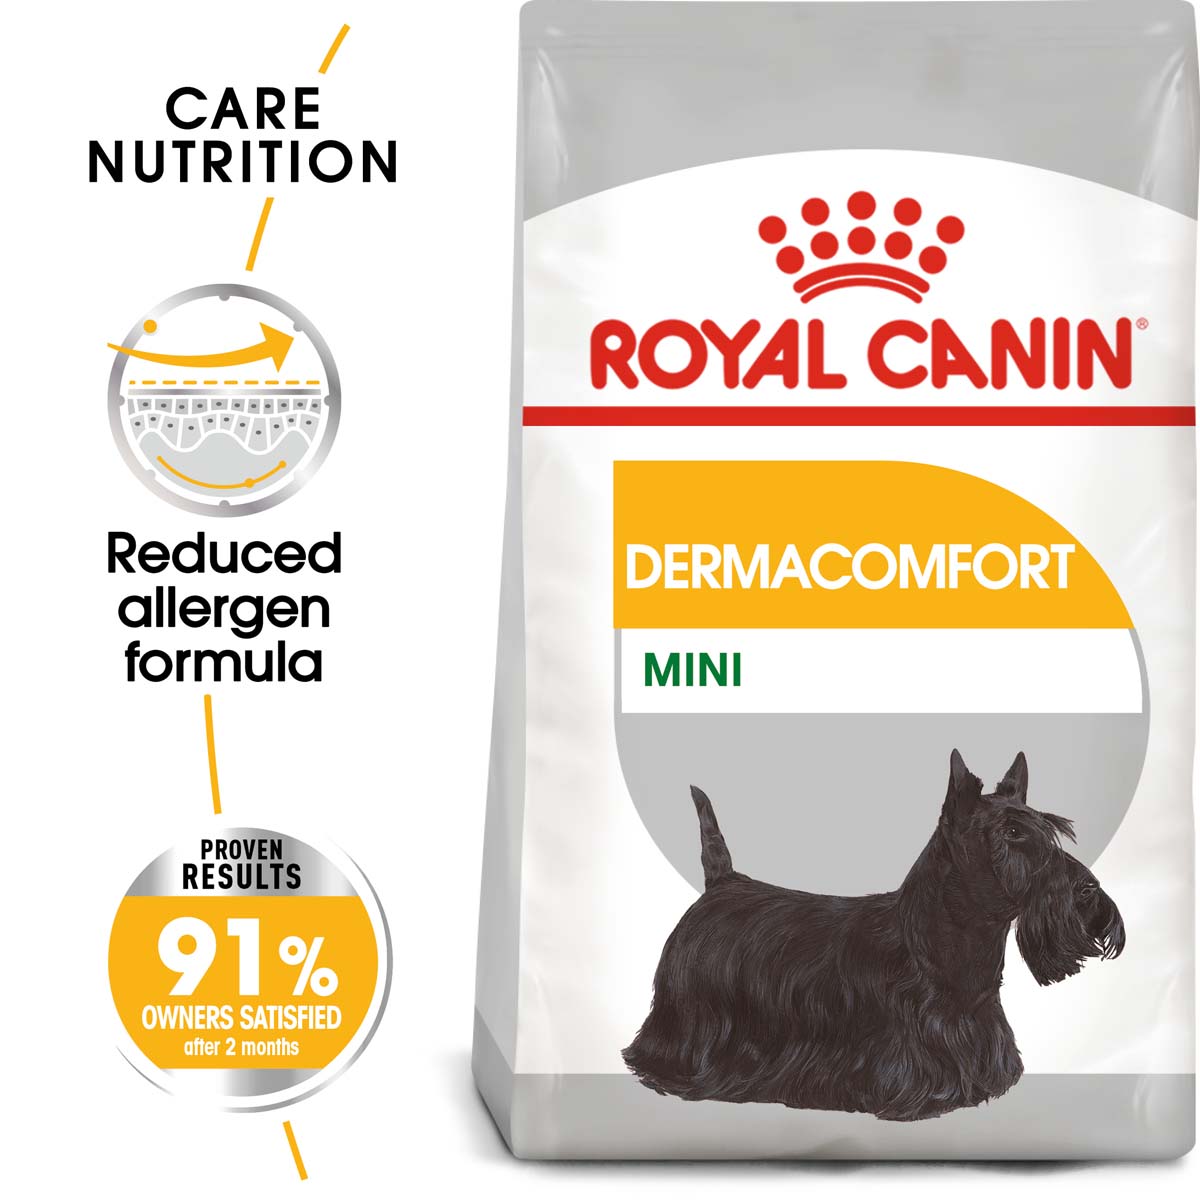 ROYAL CANIN DERMACOMFORT MINI granule pro malé psy s citlivou kůží